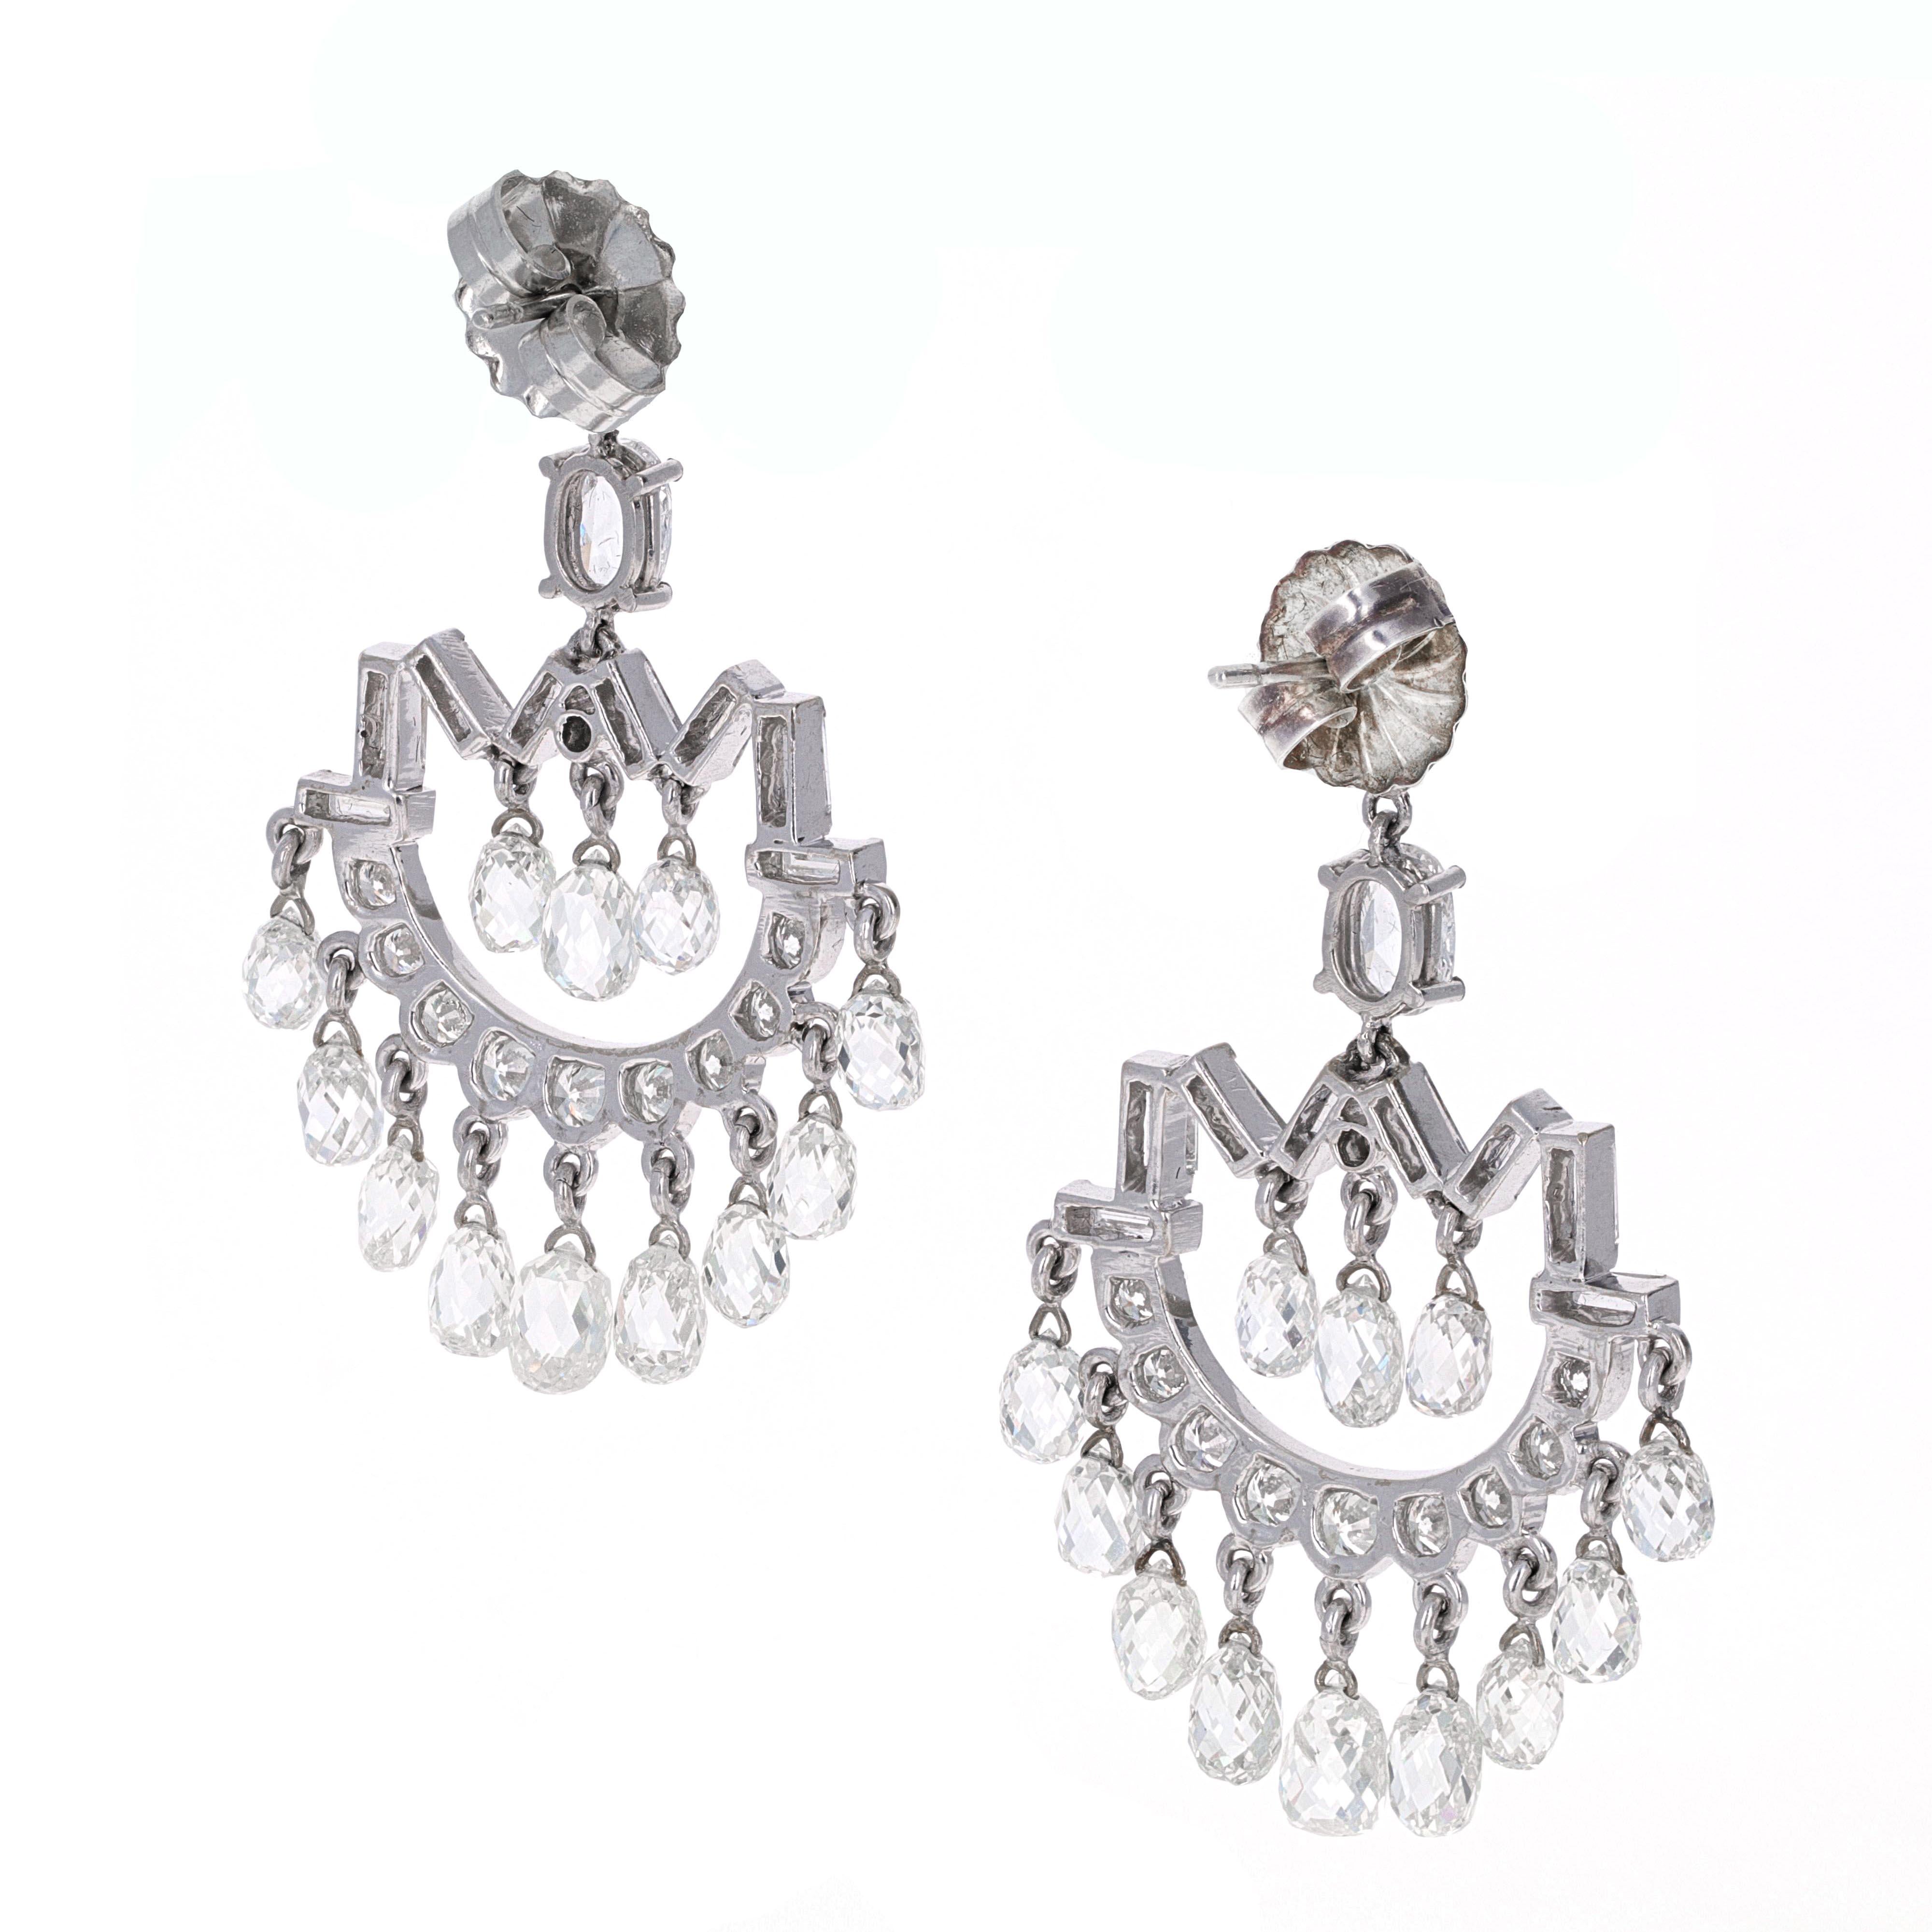 Rose Cut Art Deco Inspired Diamond Briolette Chandelier Earrings